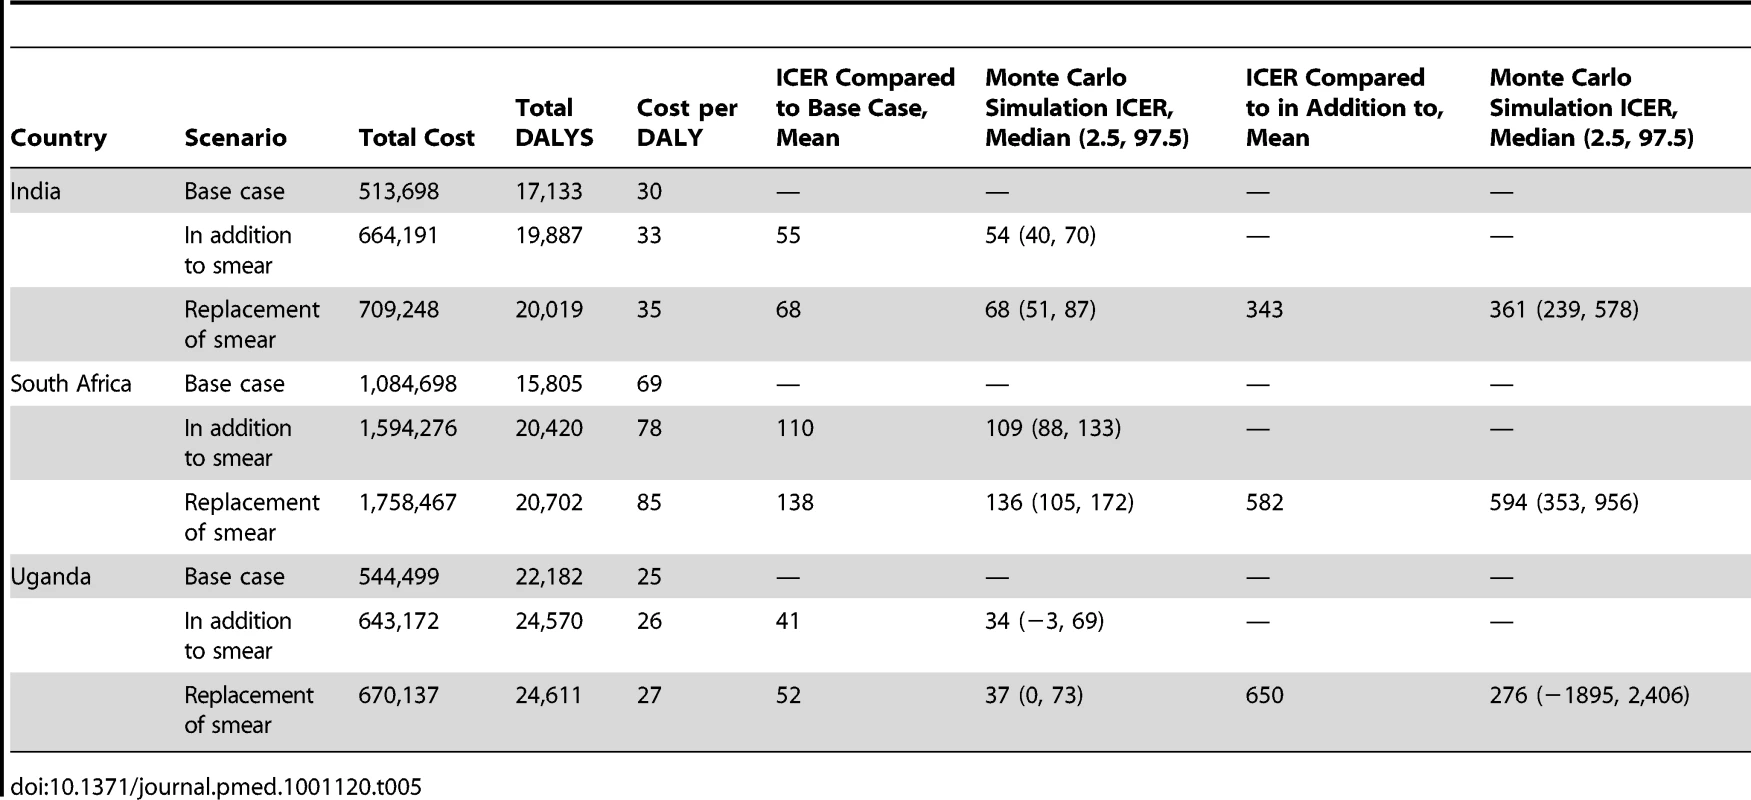 Cost per DALY (US$ 2010).